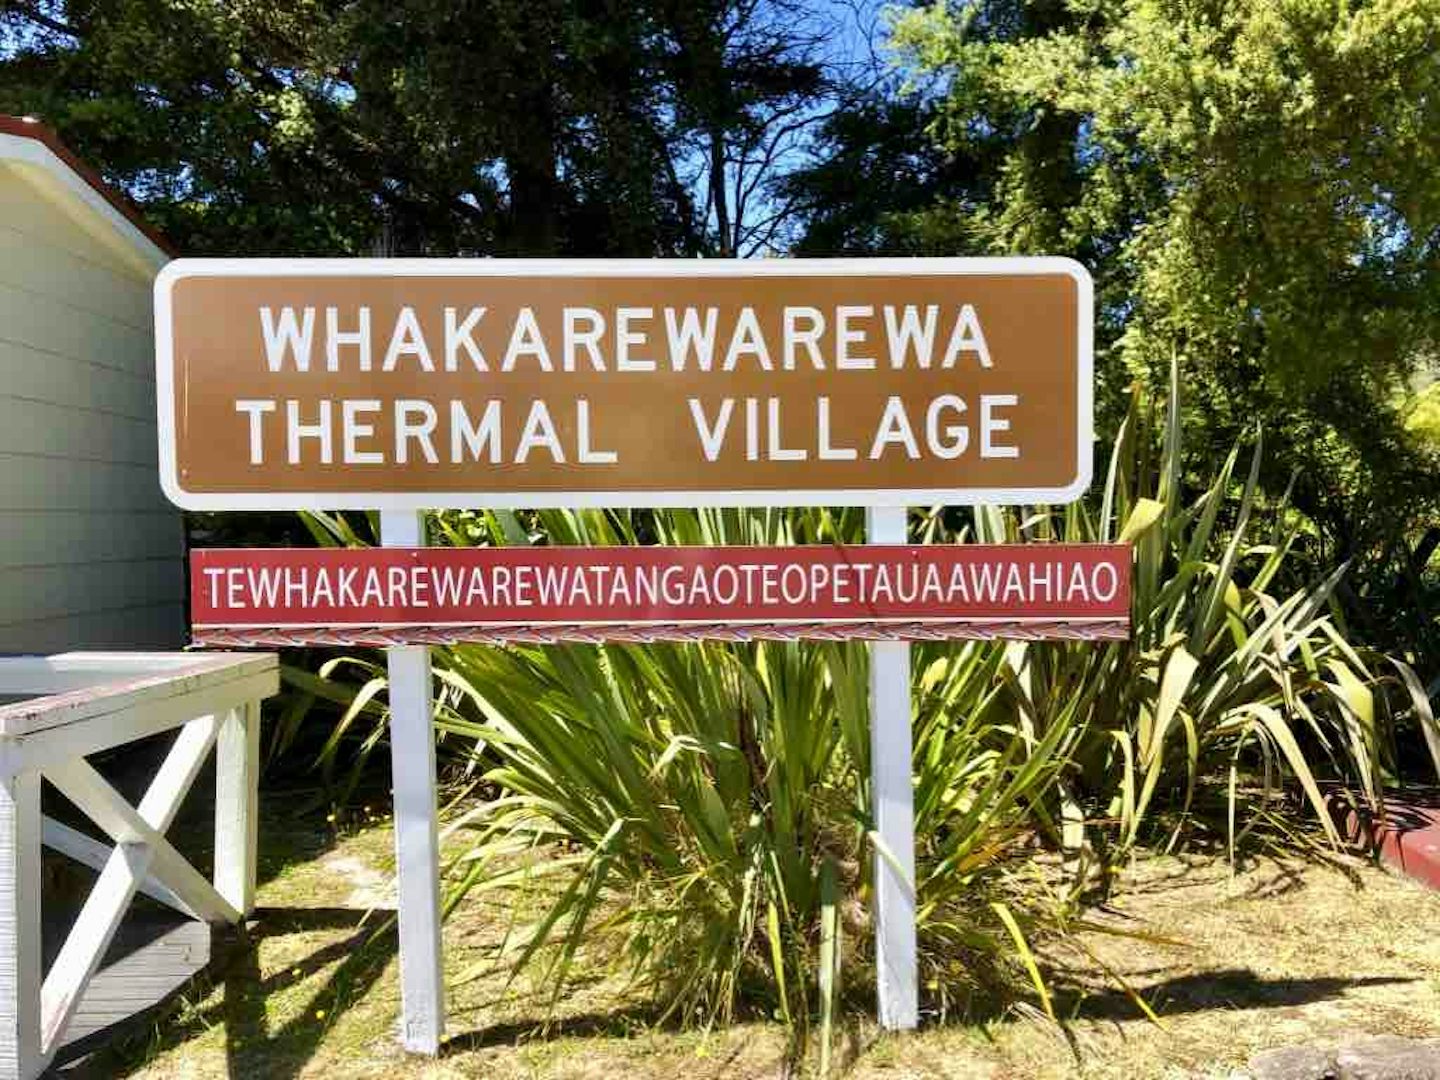 Māori village of Whakarewarewa at Rotorua.